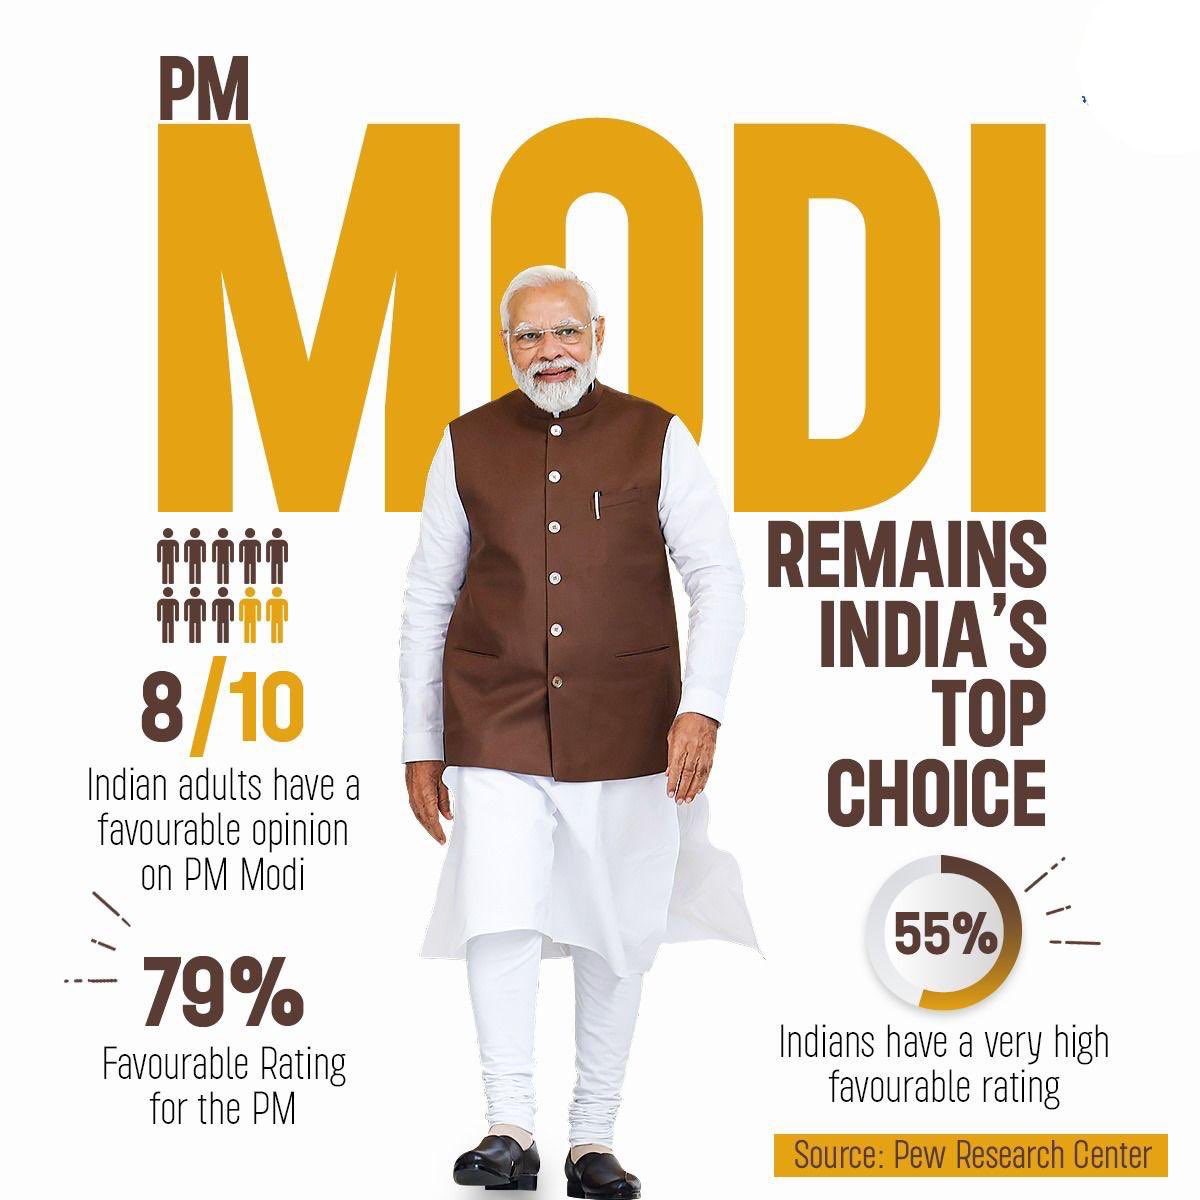 आदरणीय प्रधानमंत्री @narendramodi जी की कुशल नीतियों का ही परिणाम है कि देश में 79% लोगों की पहली पसंद मोदी जी बने हुए हैं। 

प्यू रिसर्च सेंटर का एक-एक दावा मजबूत भारत की तस्वीर दिखा रहा है।
#PewResearchCenter
#ModiHaiToMumkinHai